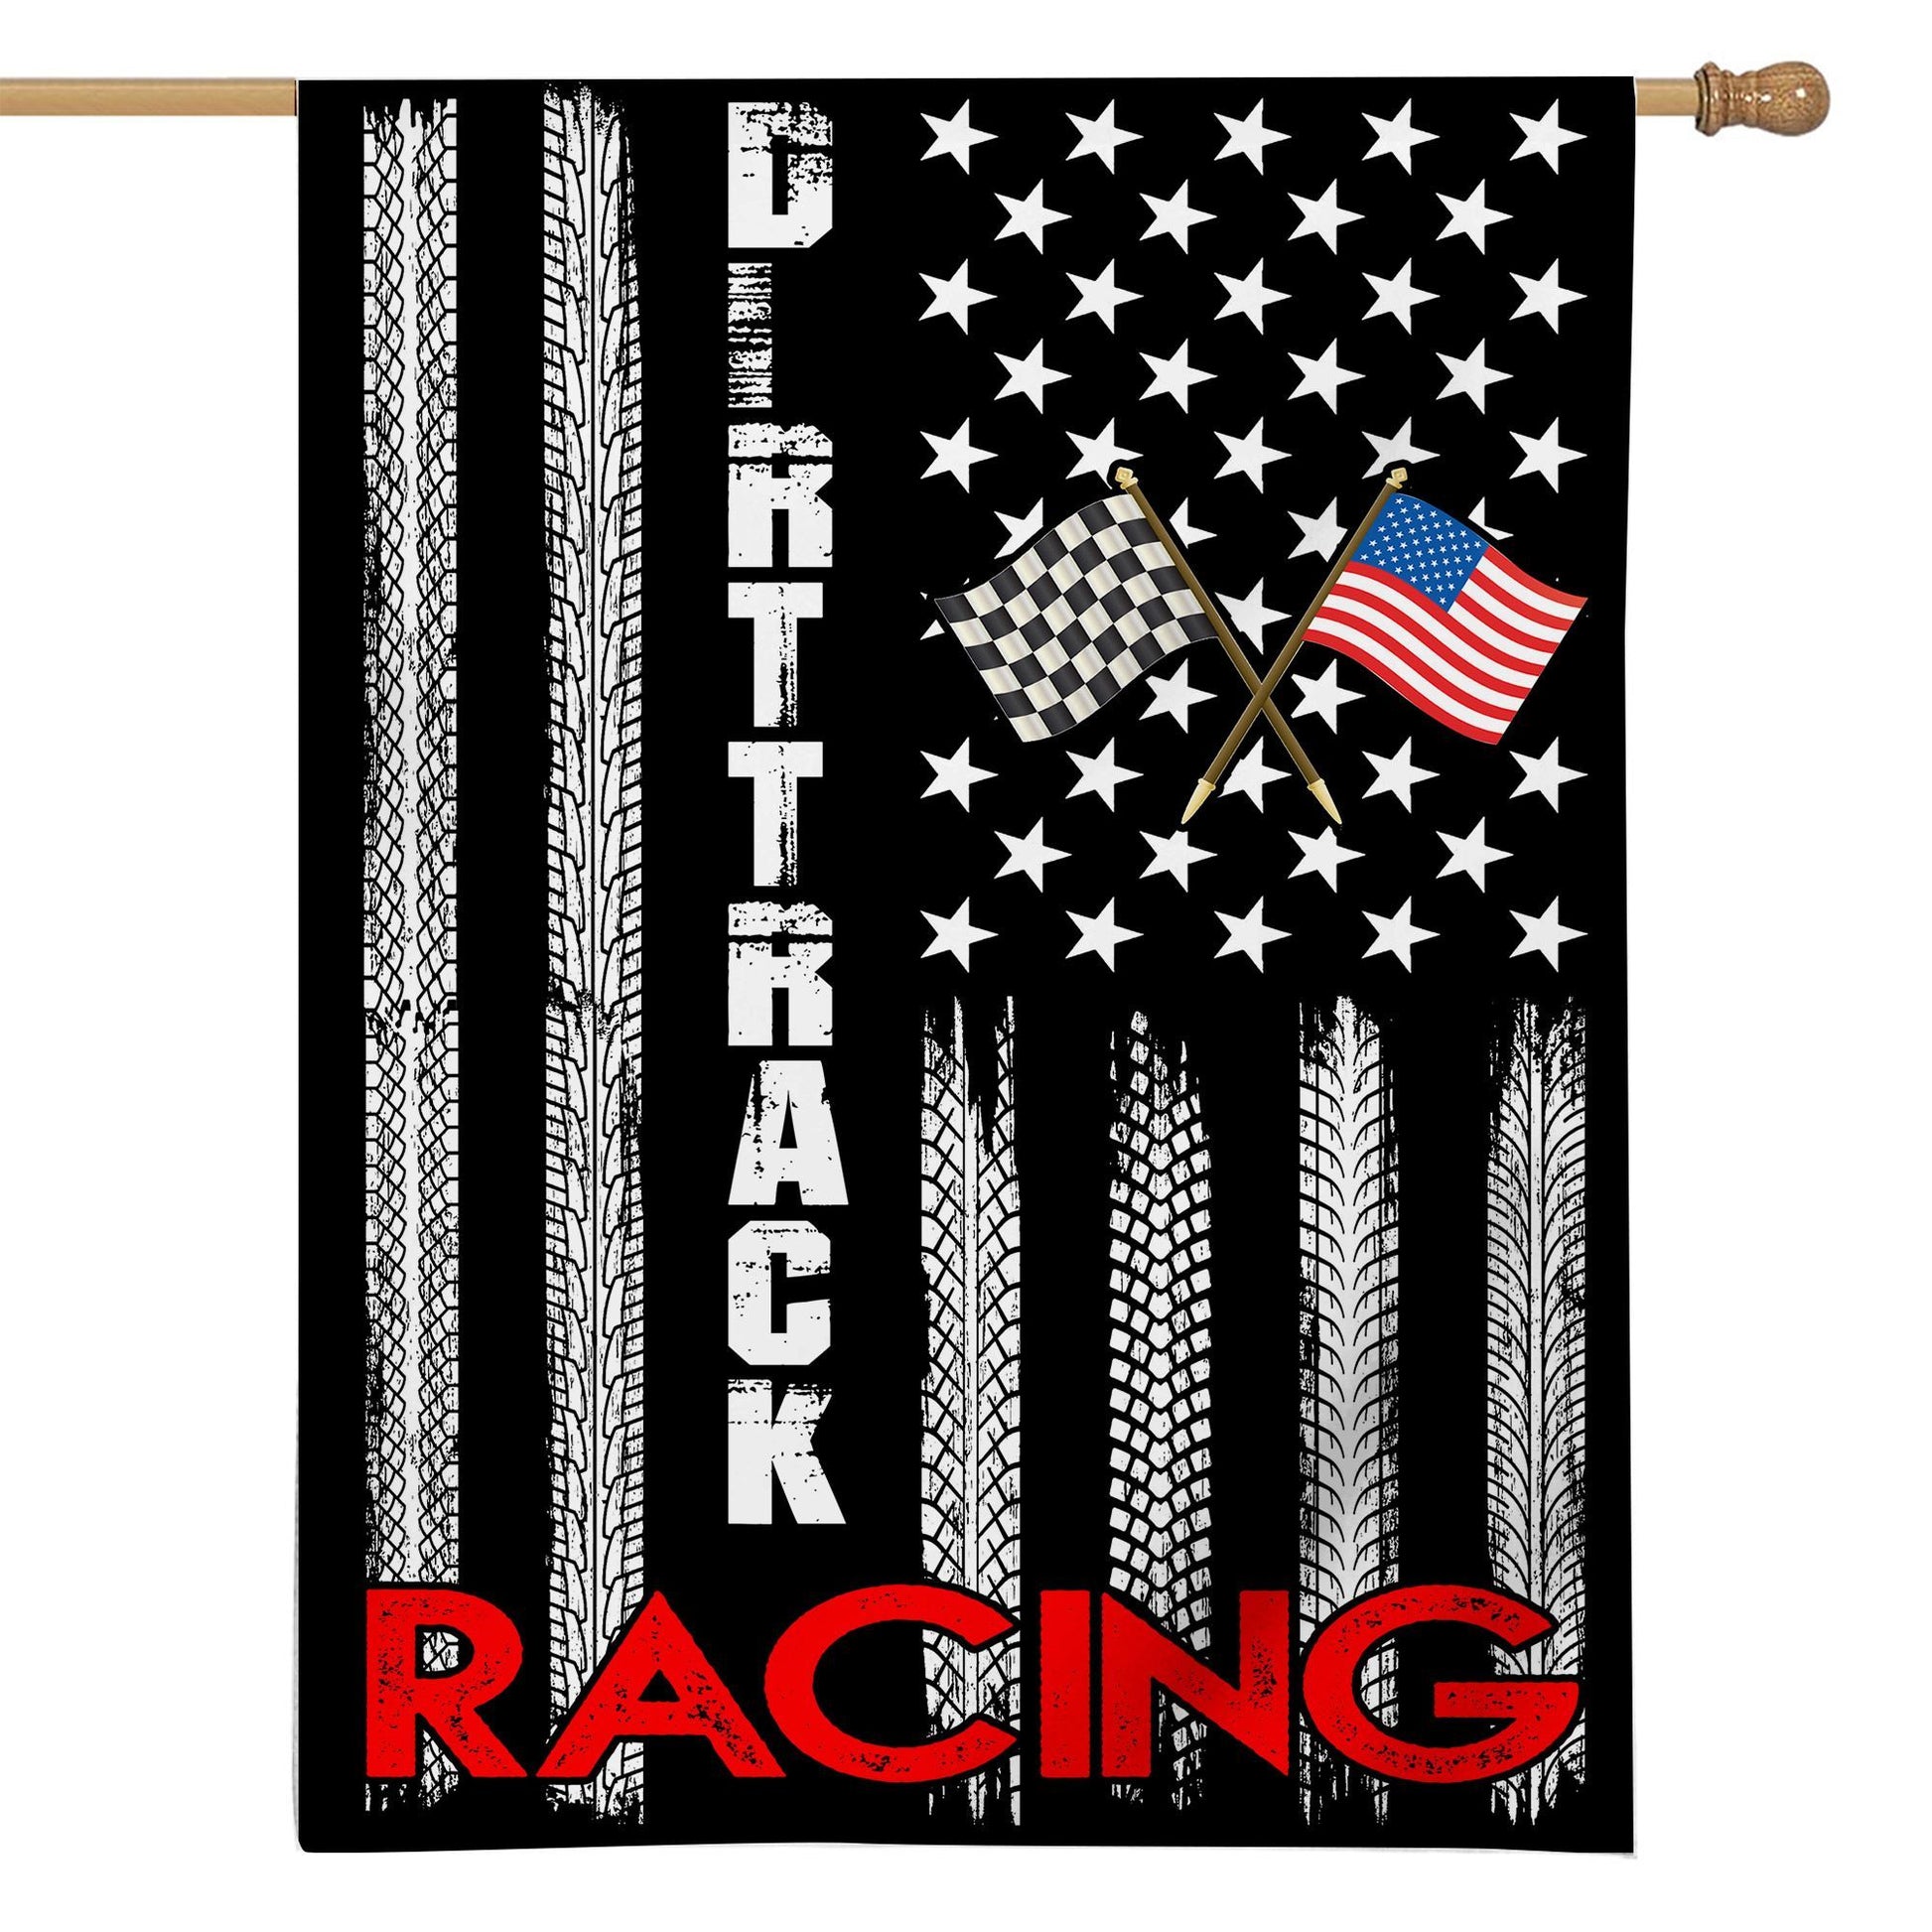 Gearhuman 3D Dirt Track Racing Flag ZK28062113 Flag House Flag 17.7''x11.6'' 